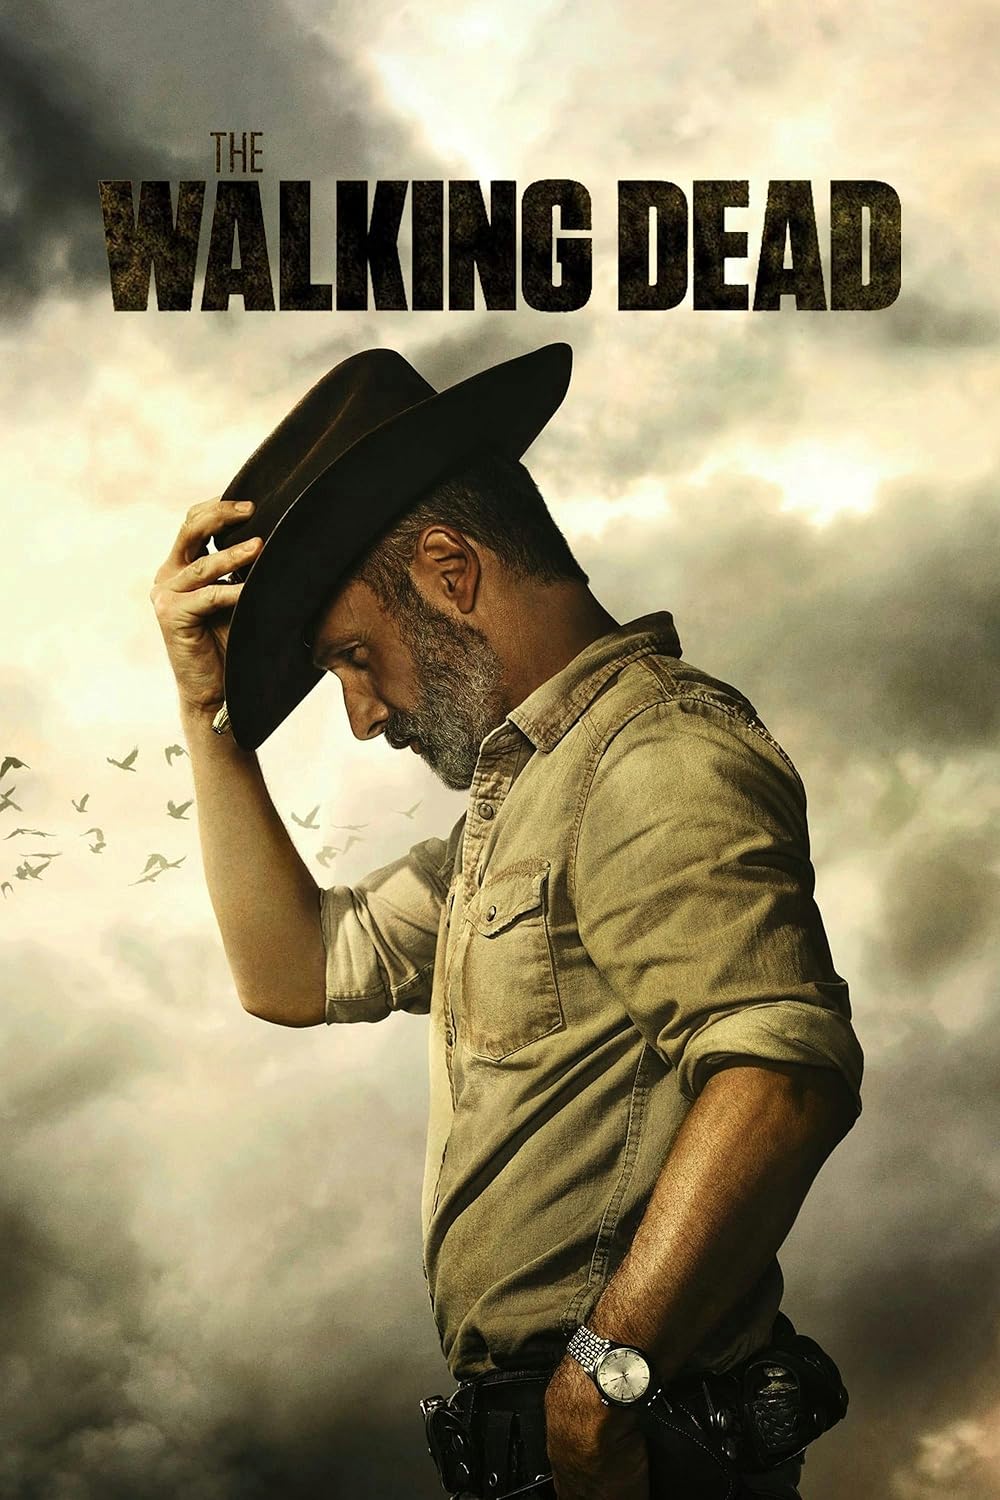 The Walking Dead ซีรีย์ฝรั่ง